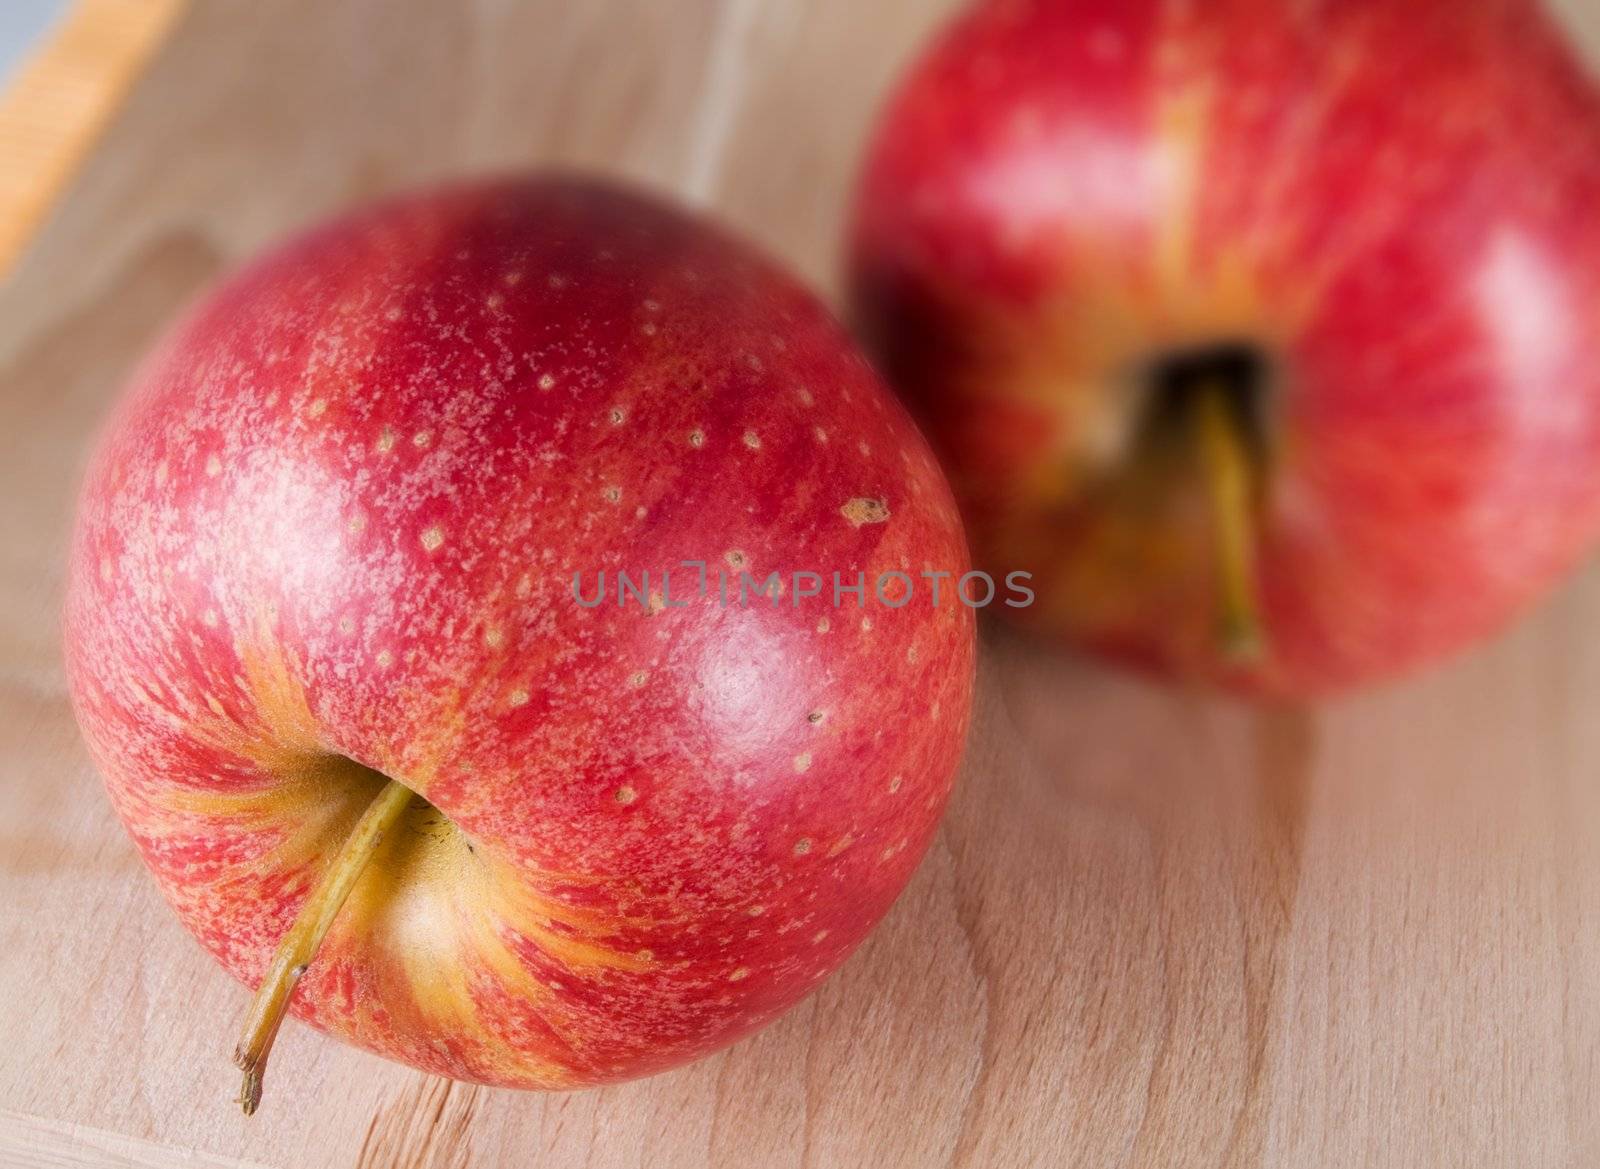 Red apples by henrischmit